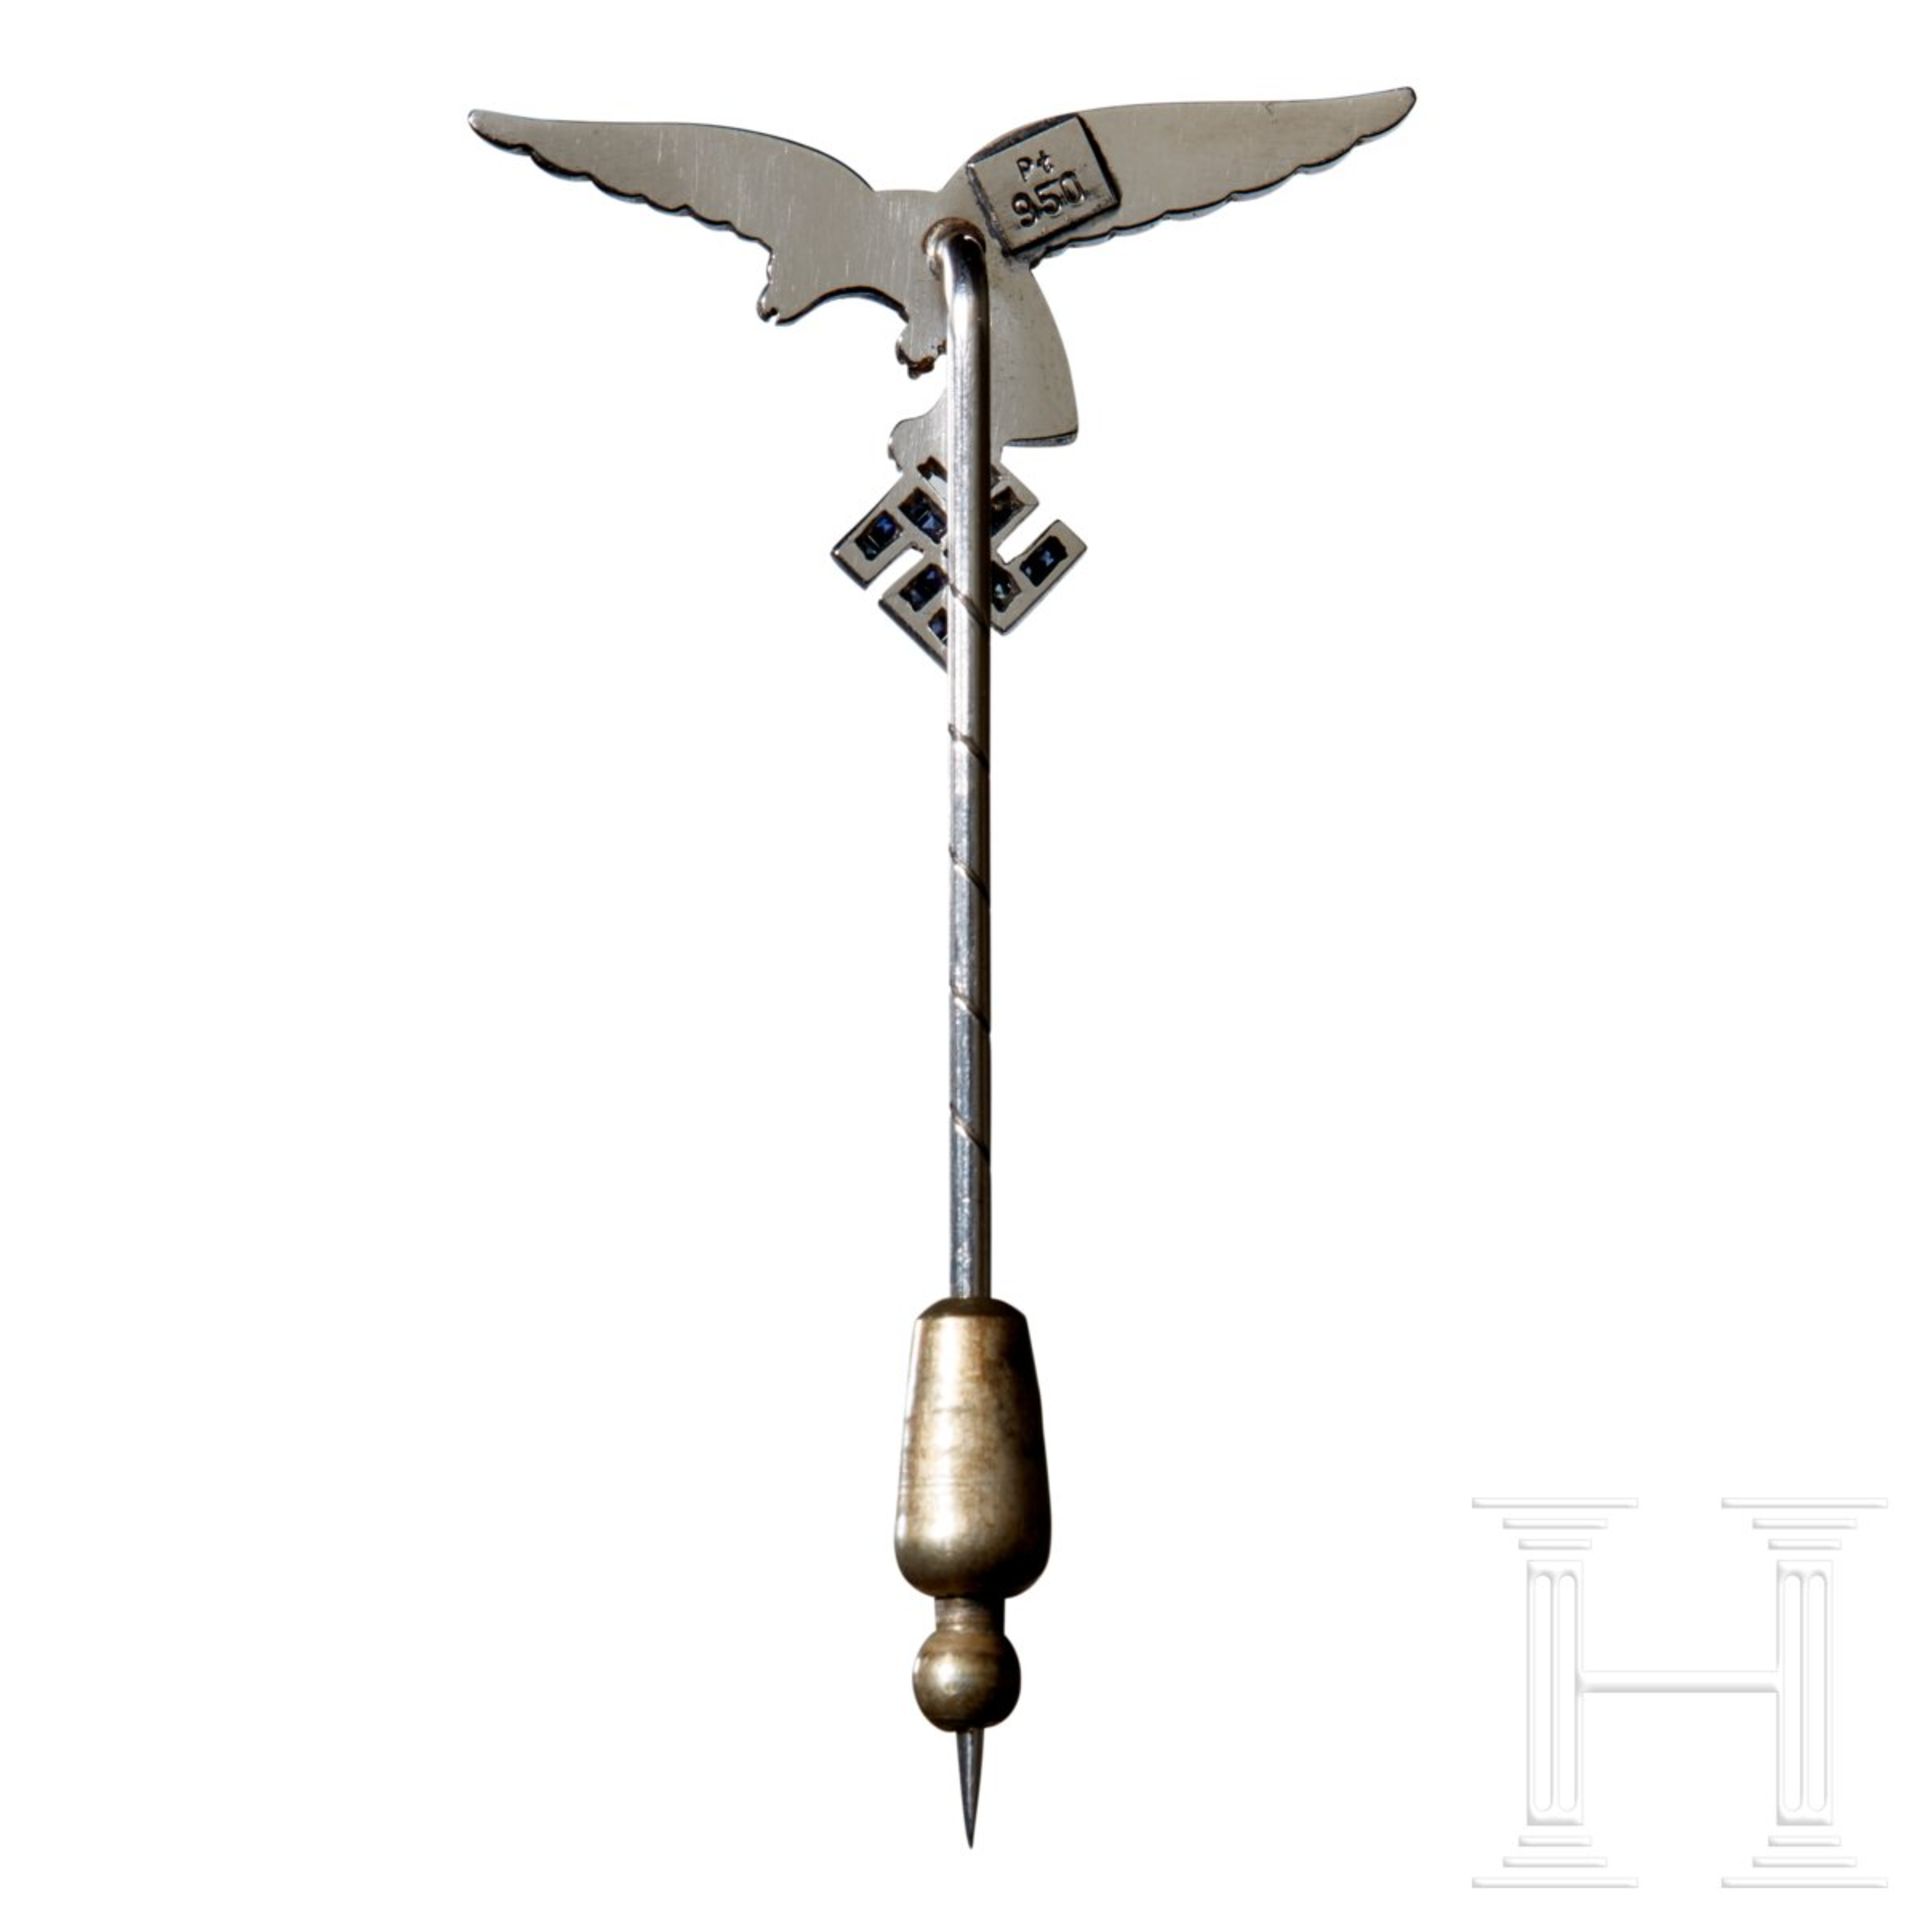 A Stick Pin of the Luftwaffe - Bild 3 aus 3